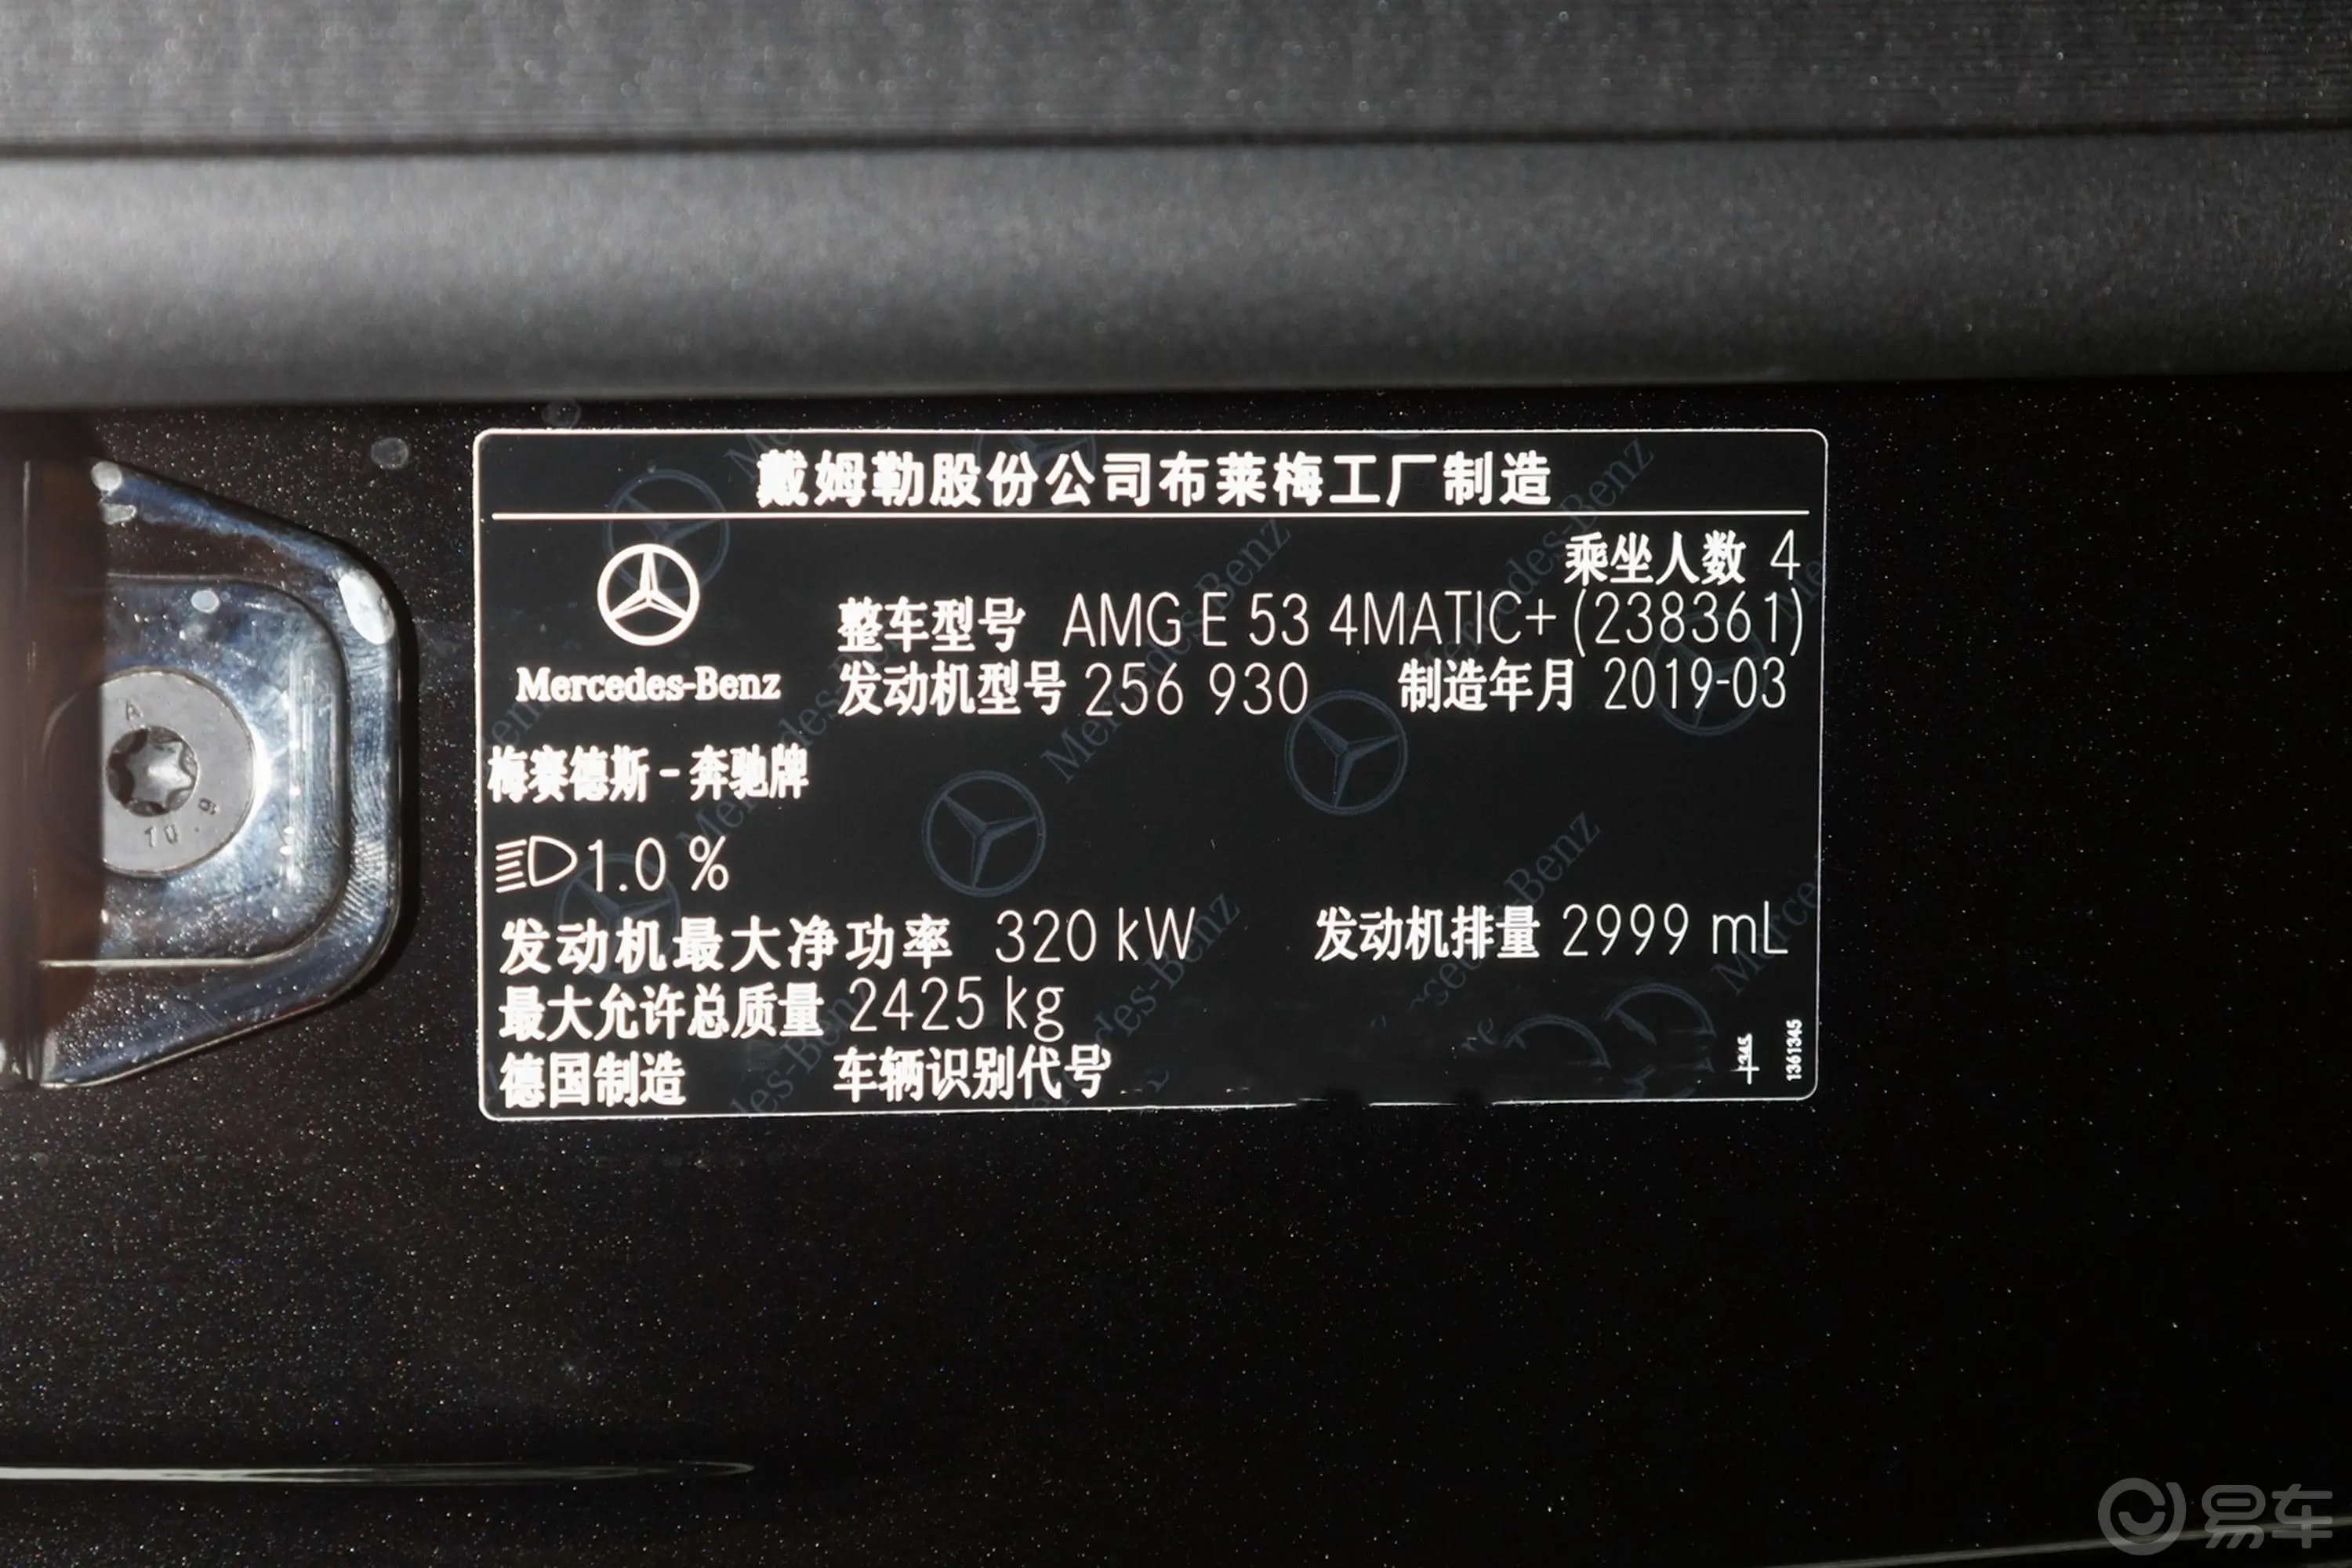 奔驰E级 AMGE 53 4MATIC+ 轿跑车车辆信息铭牌